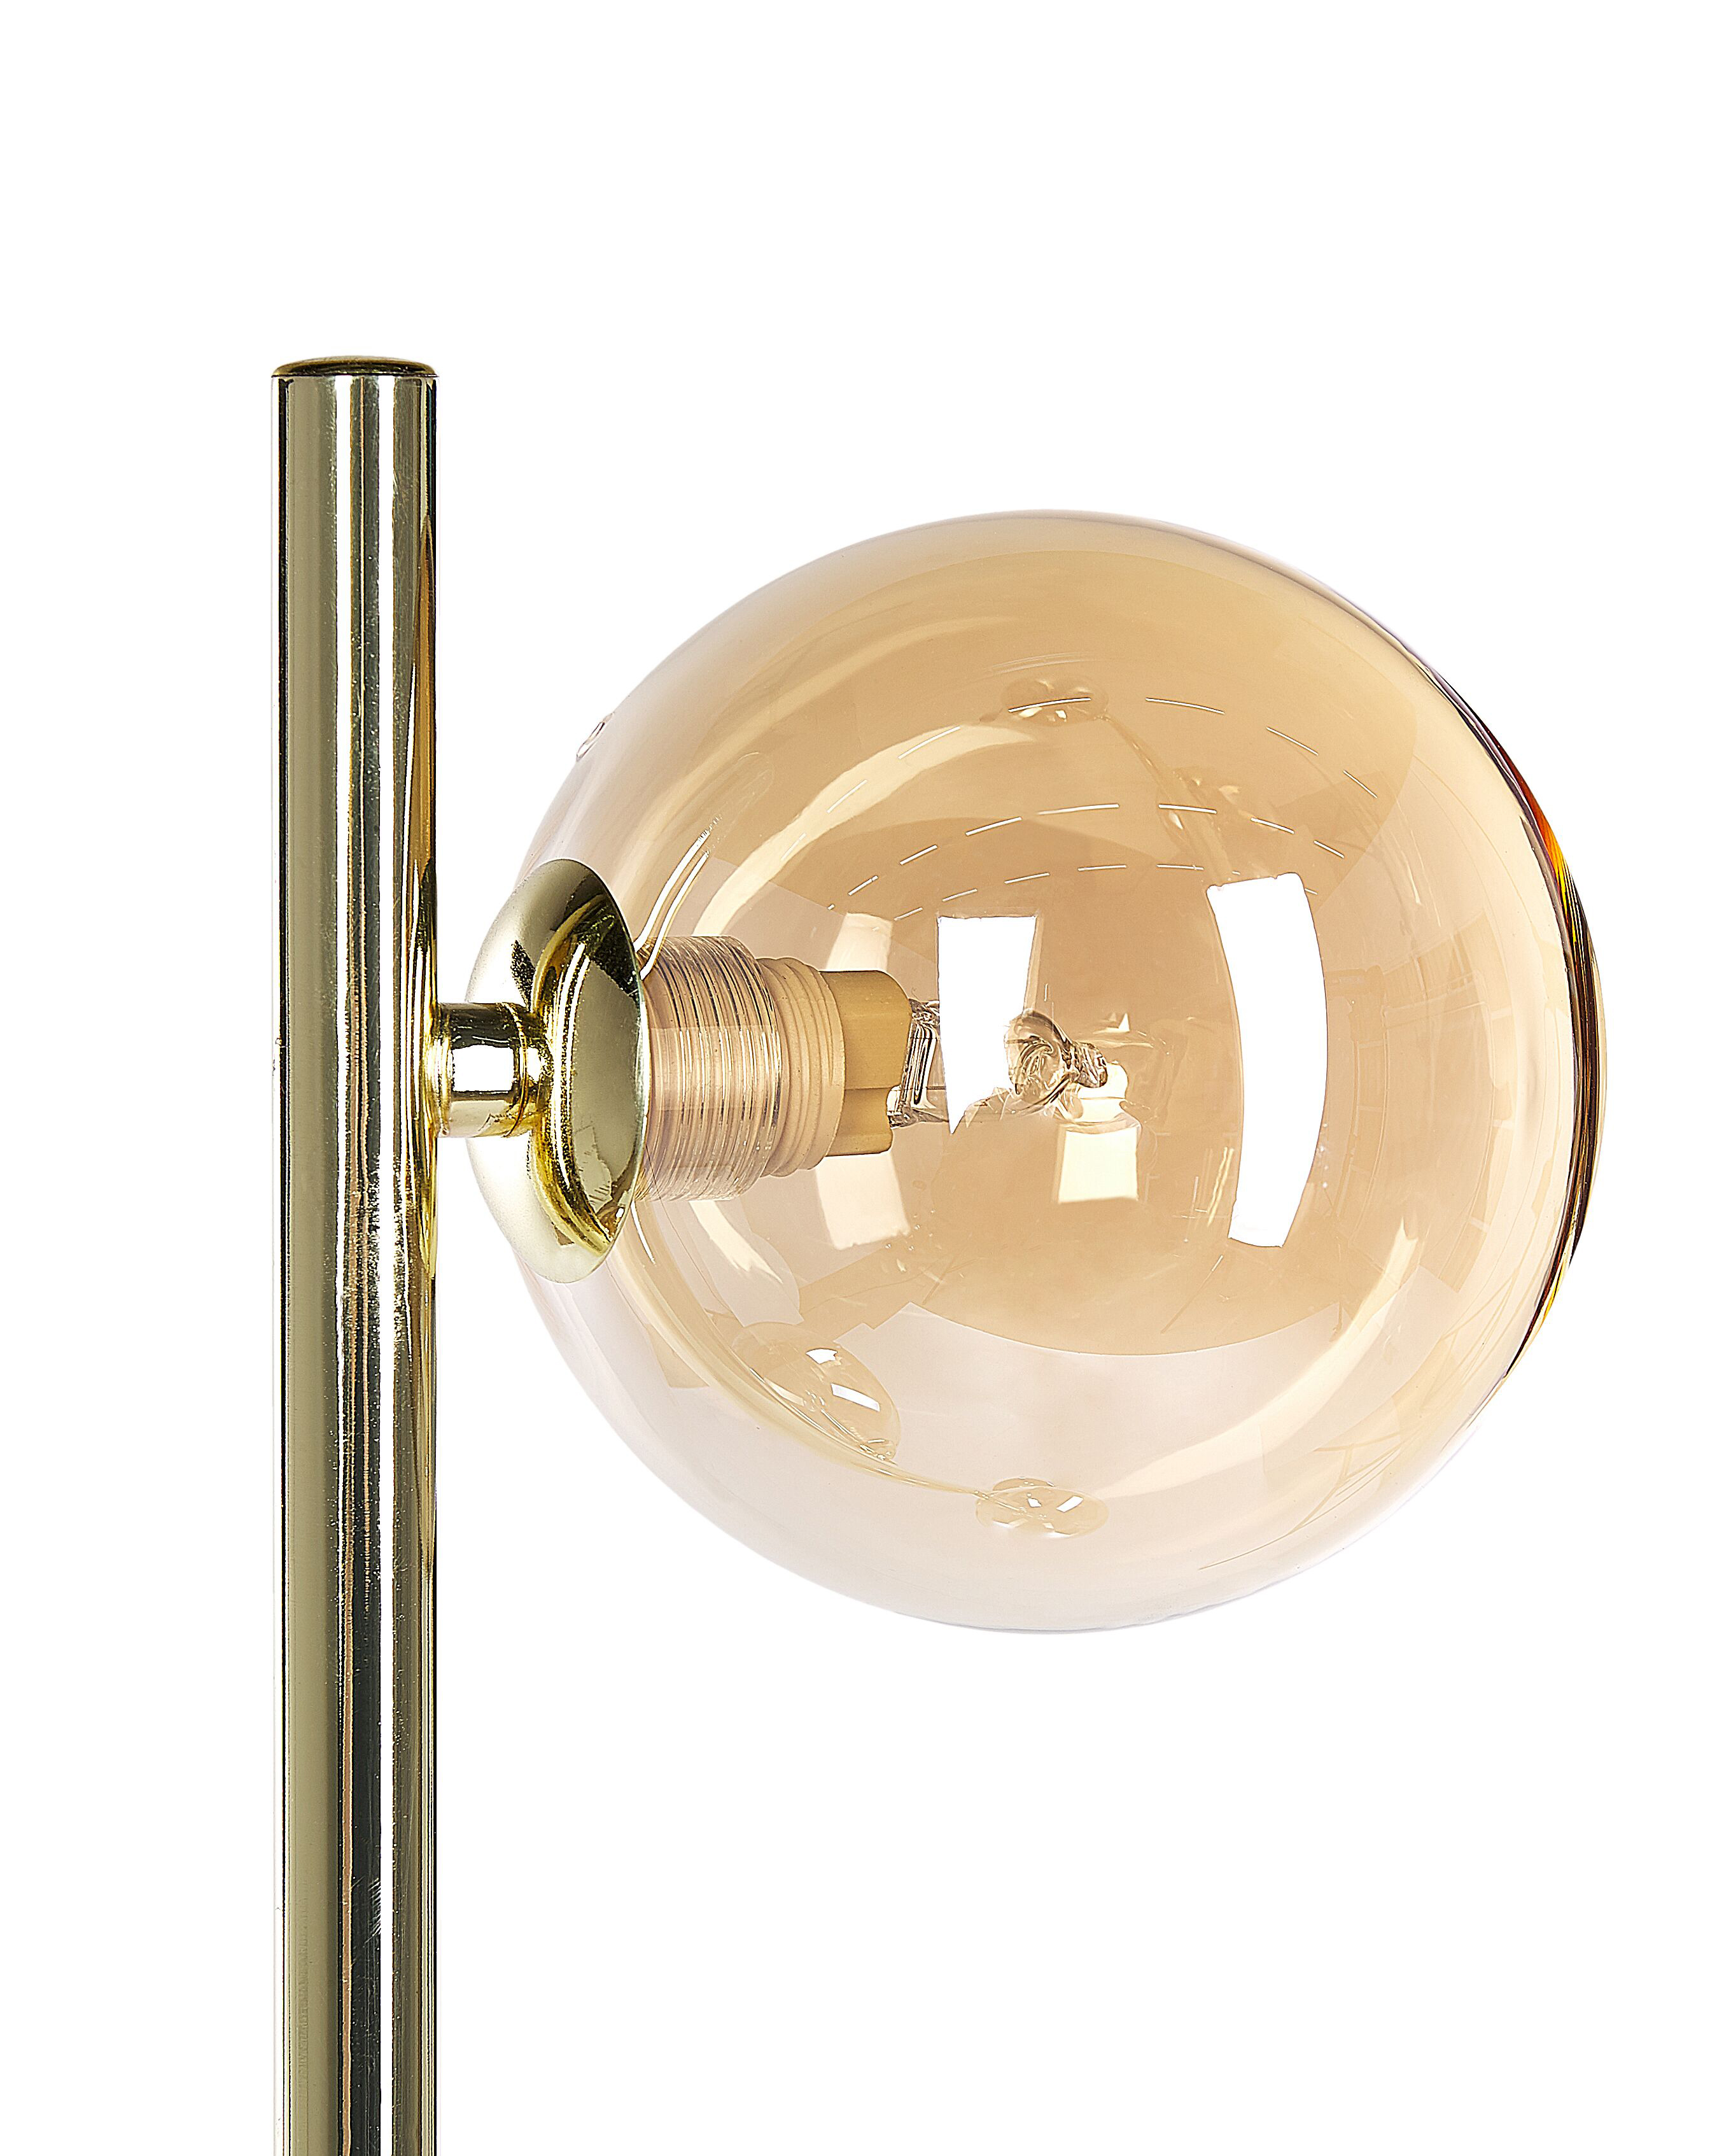 Stehlampe Metall / Rauchglas gold 154 cm 3-flammig Kugelform RAMIS_841502